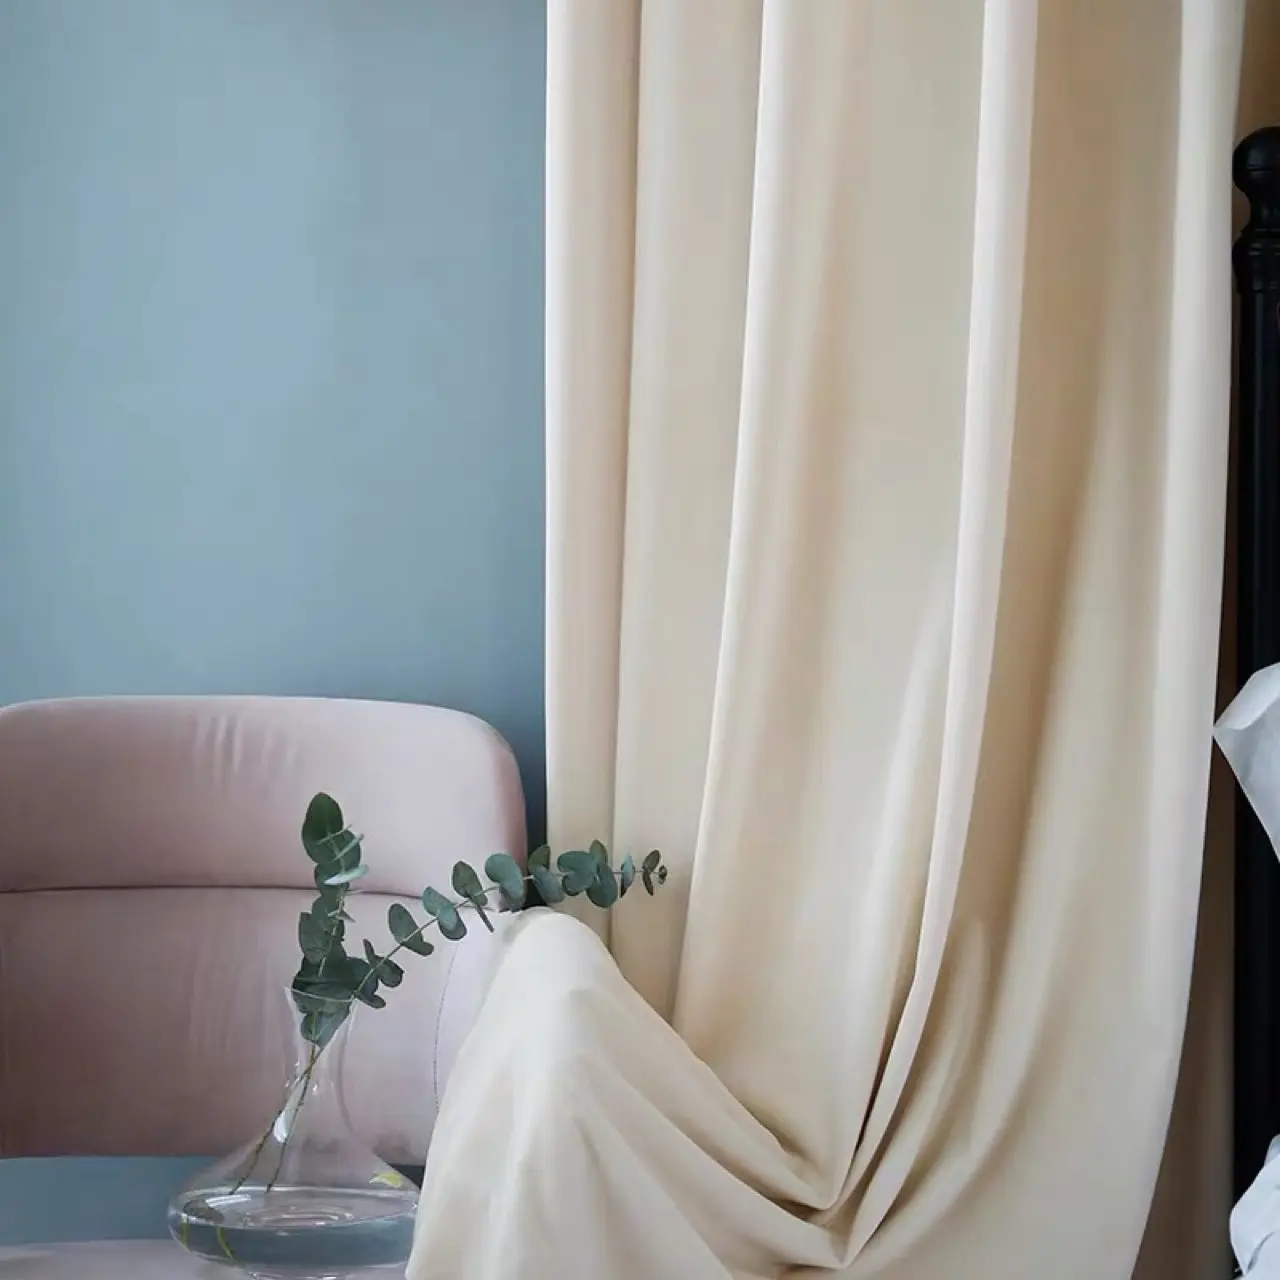 Cortina de tela con acabado Simple y moderno estilo nórdico, sombreado de terciopelo, Color Beige, para dormitorio, sala de estar, ventana plana, hilo teñido